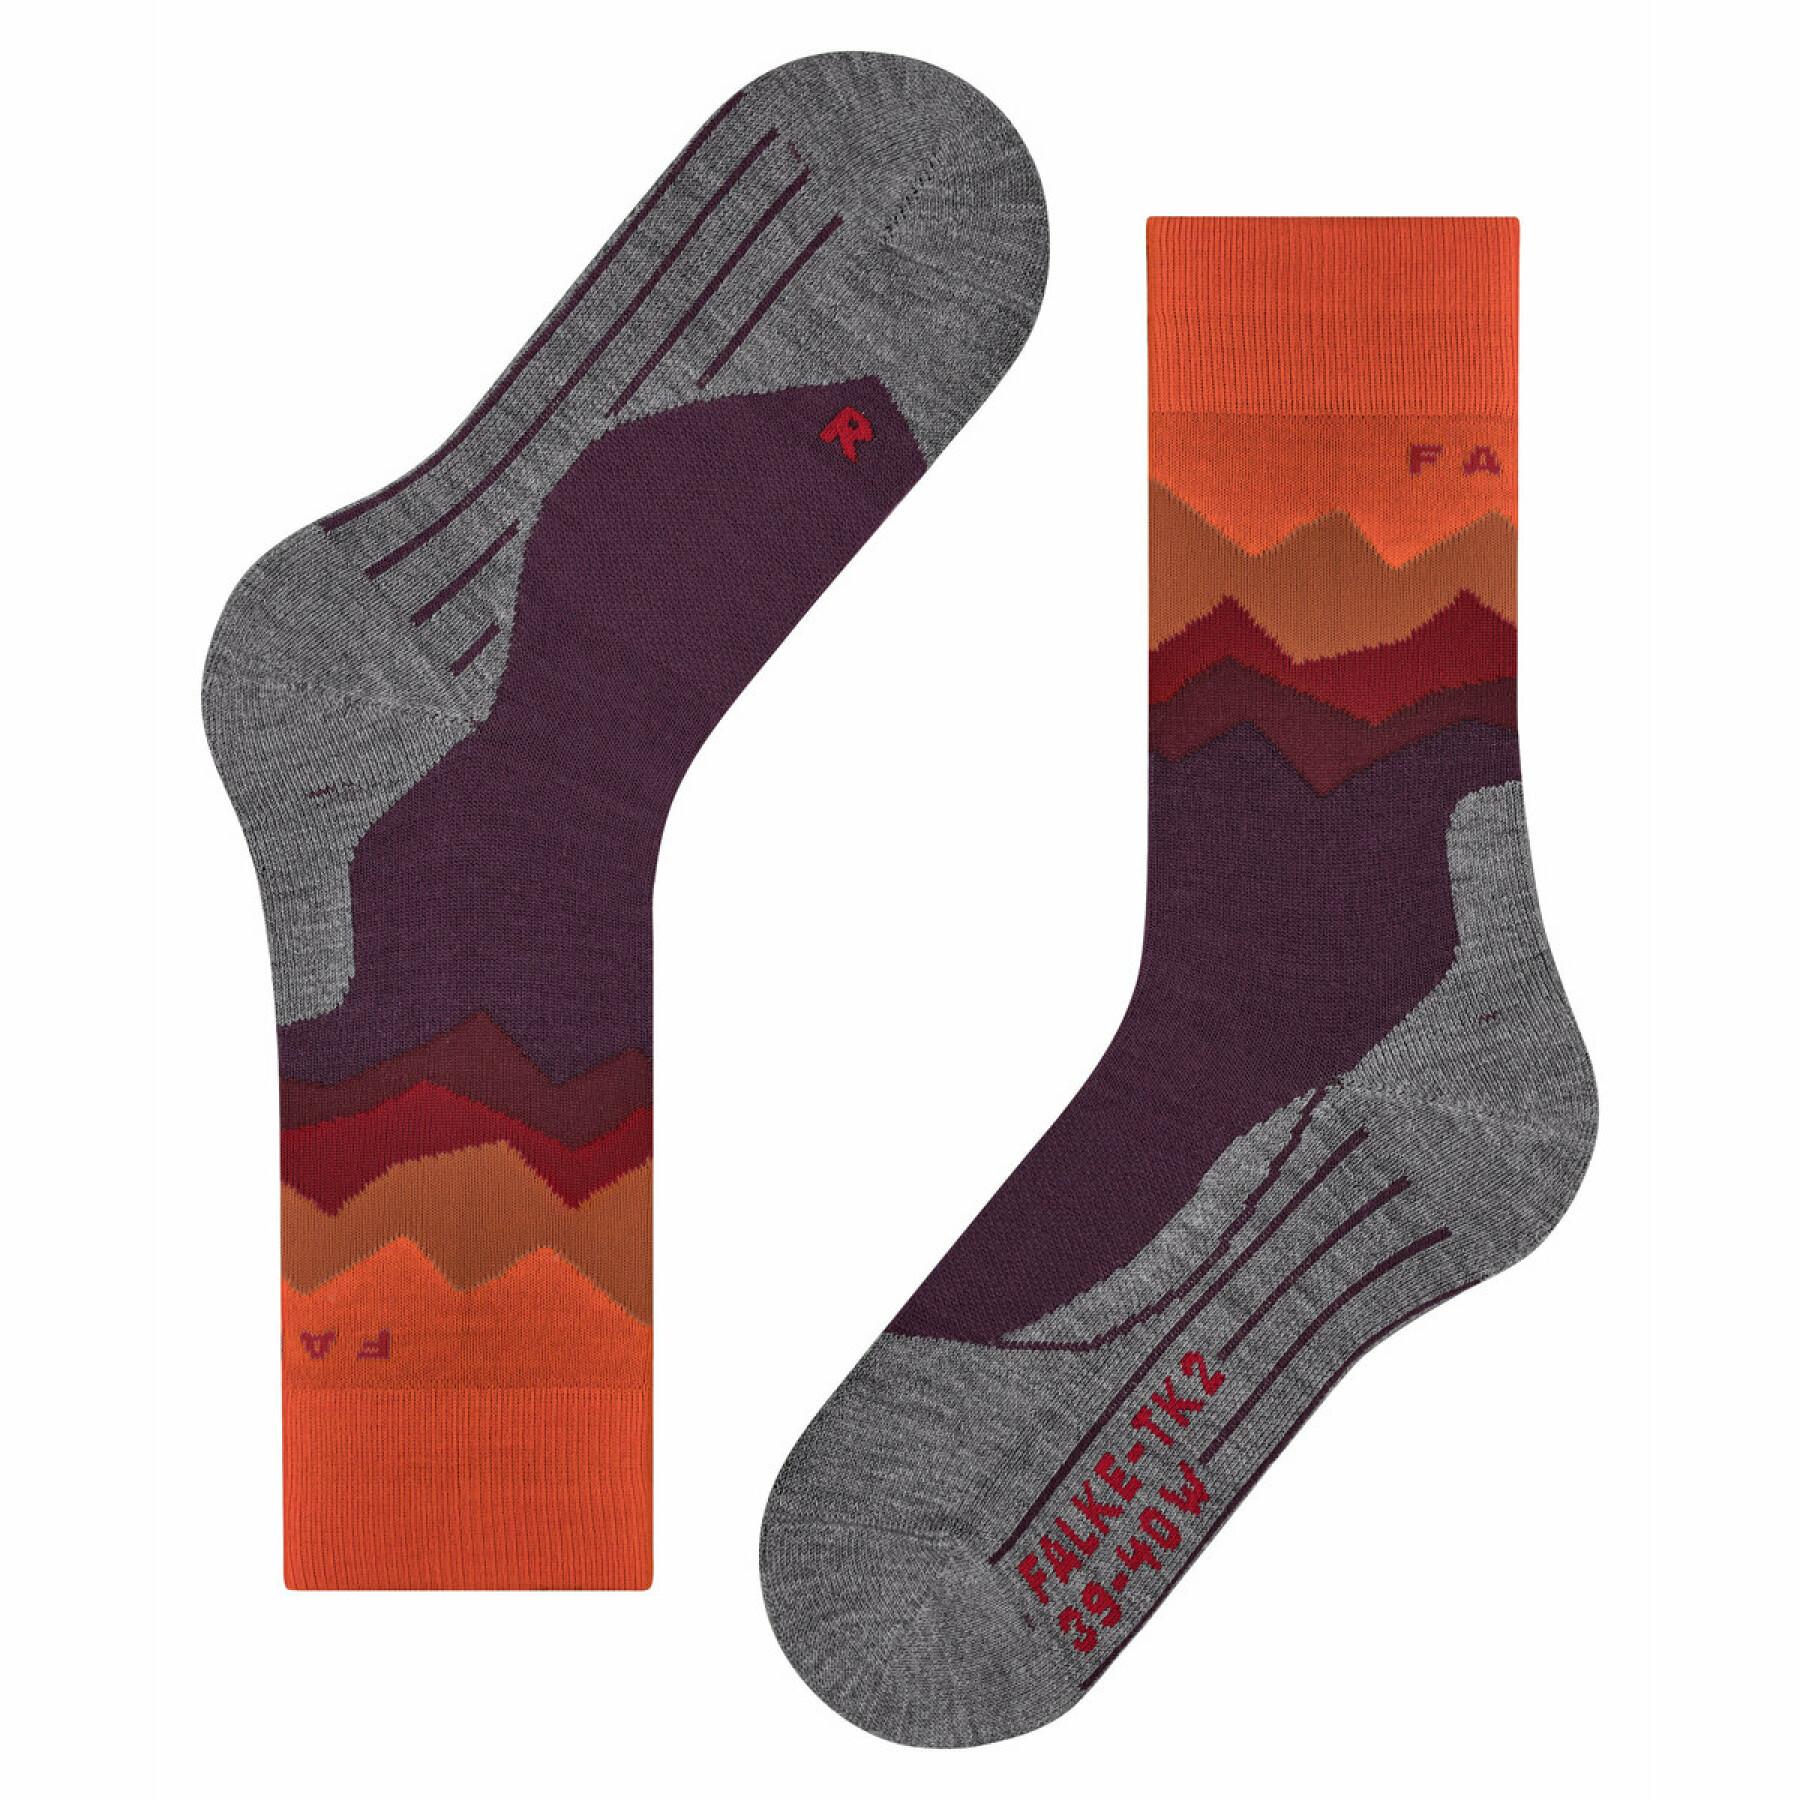 Women's socks Falke TK2 Crest